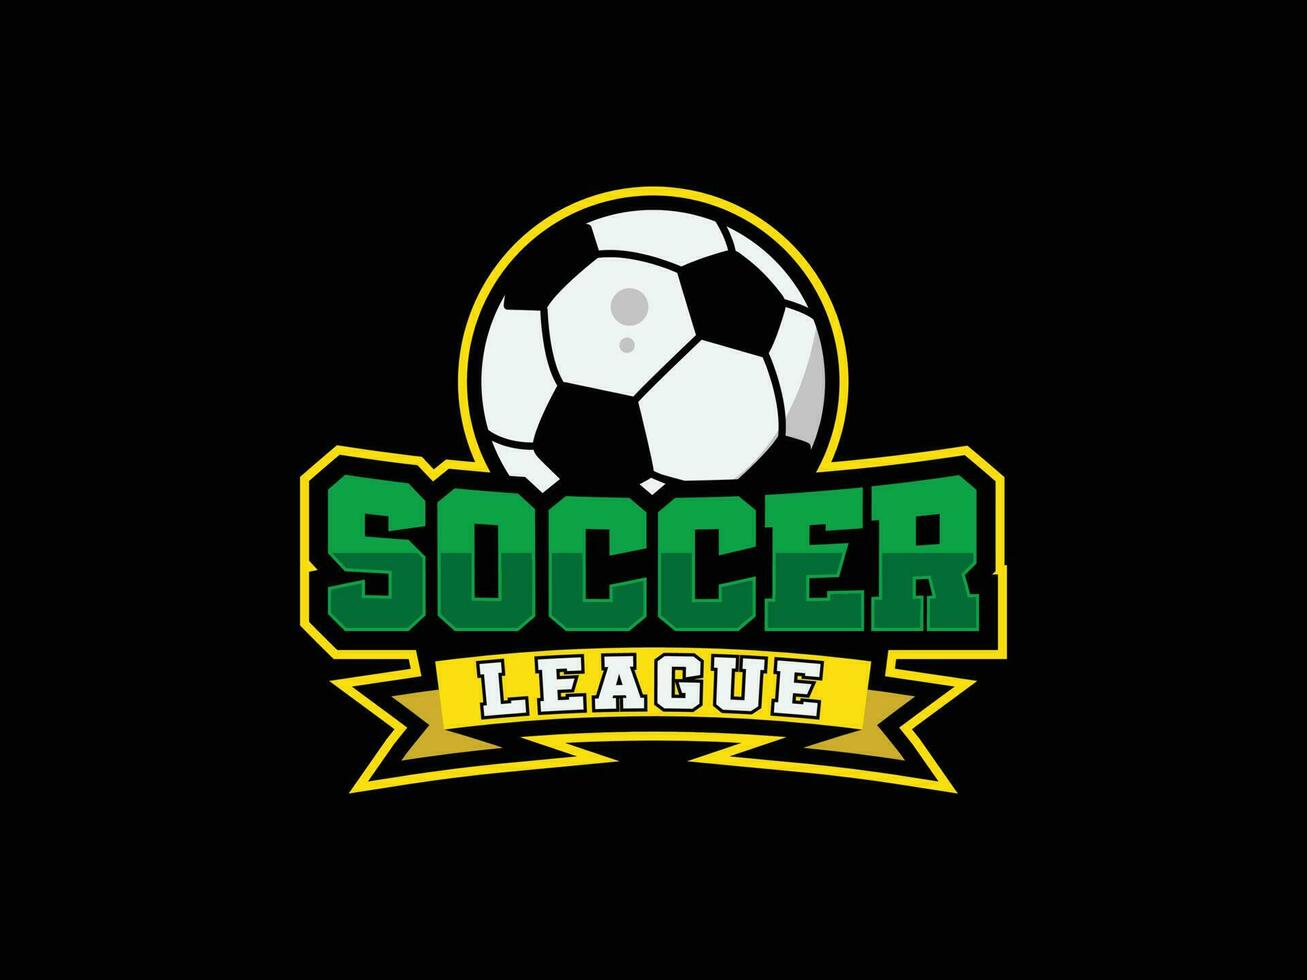 vektor fotboll klubb logotyp, emblem och fotboll liga